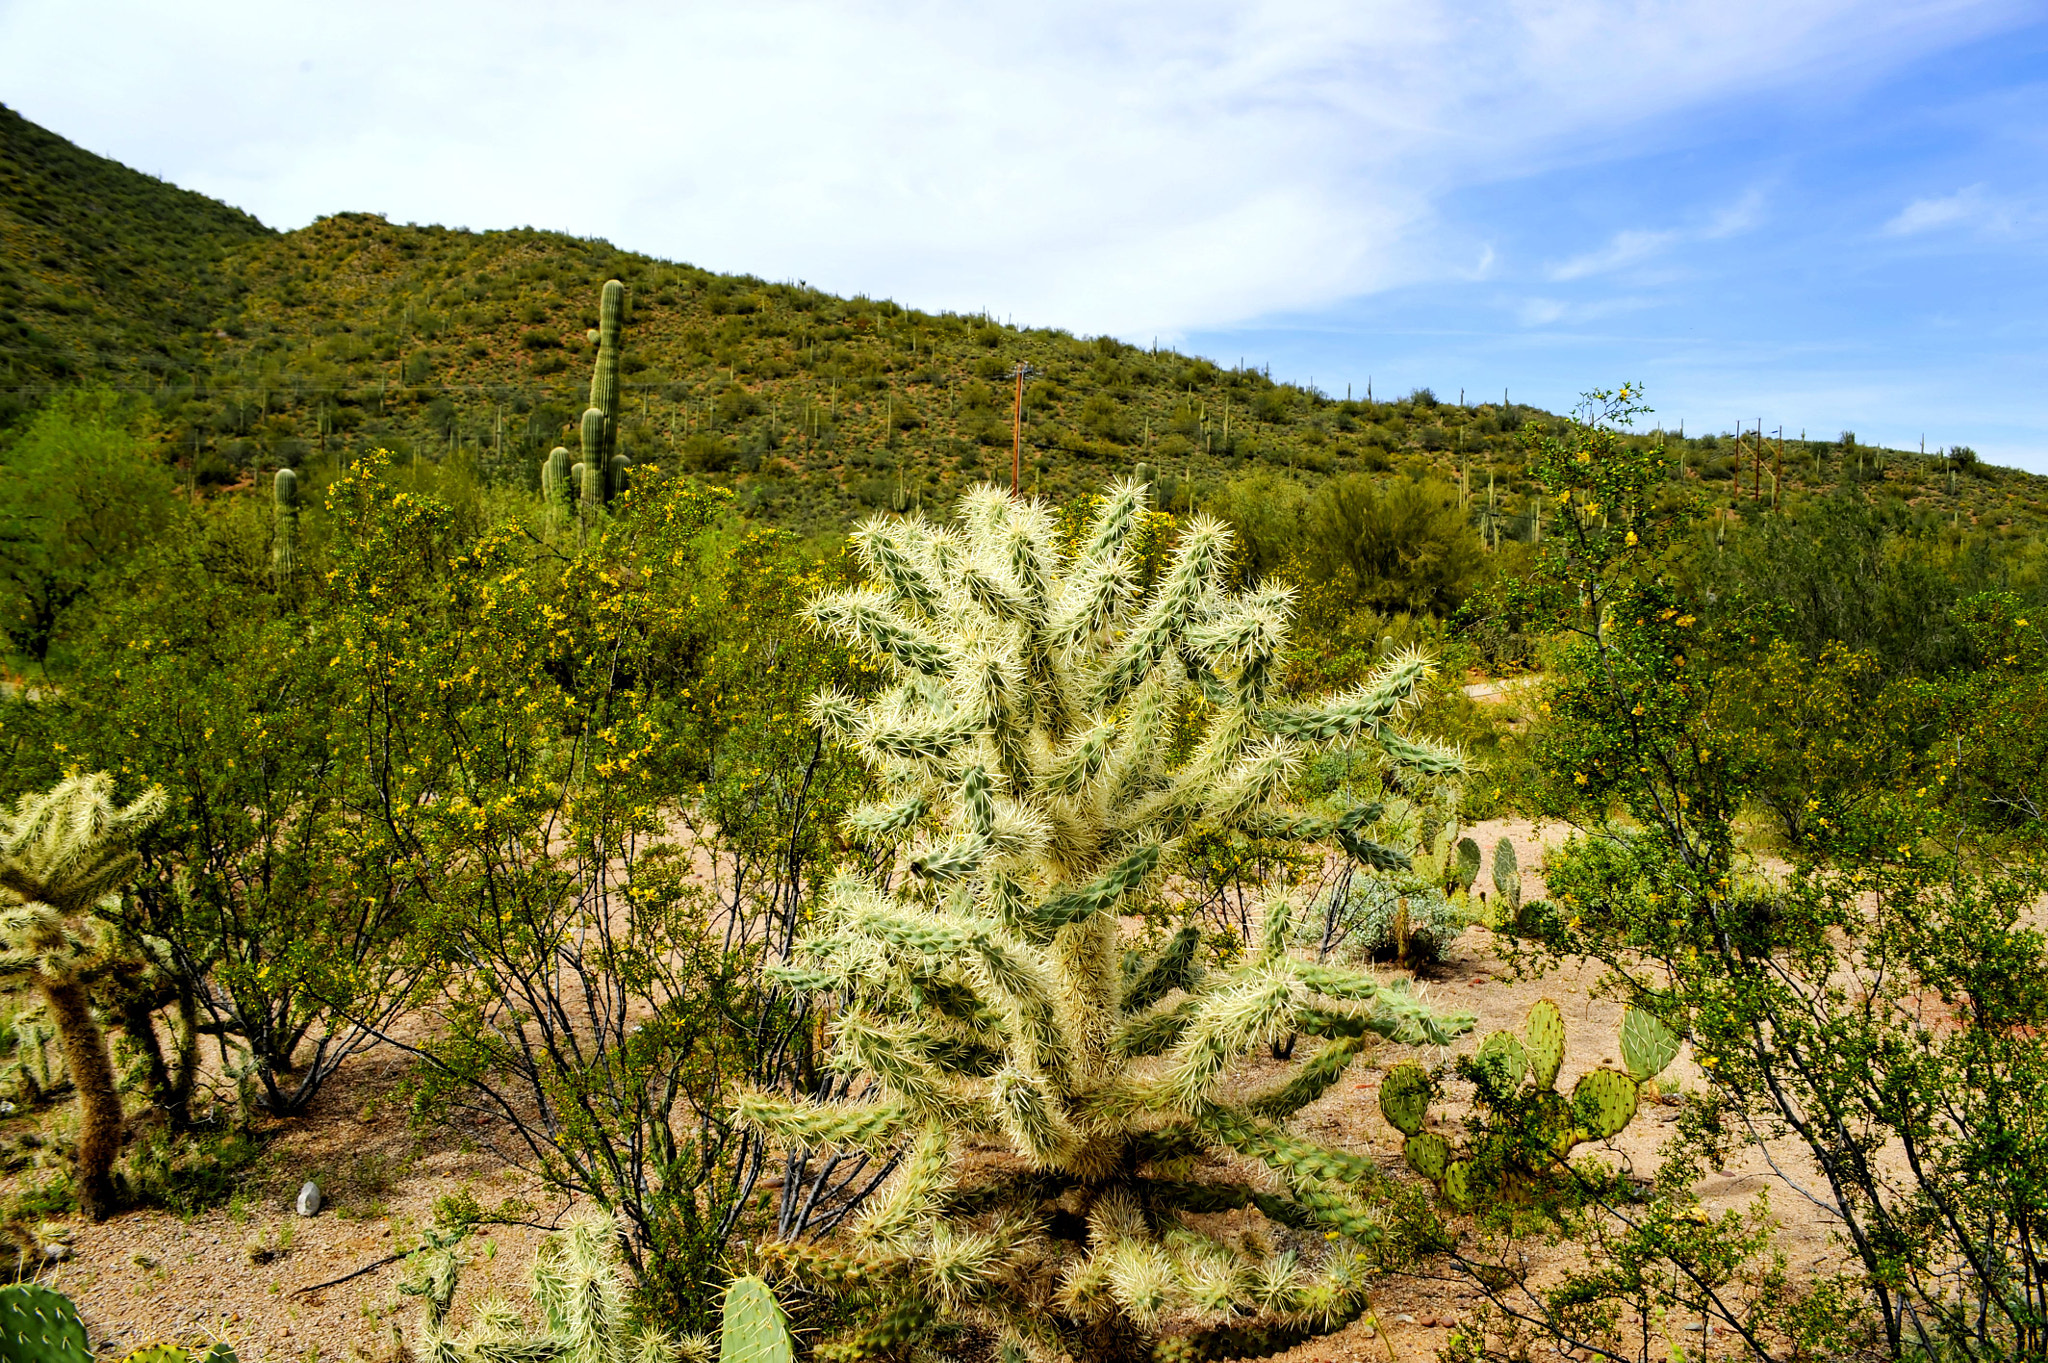 AF Zoom-Nikkor 28-85mm f/3.5-4.5 sample photo. Cholla cactus photography